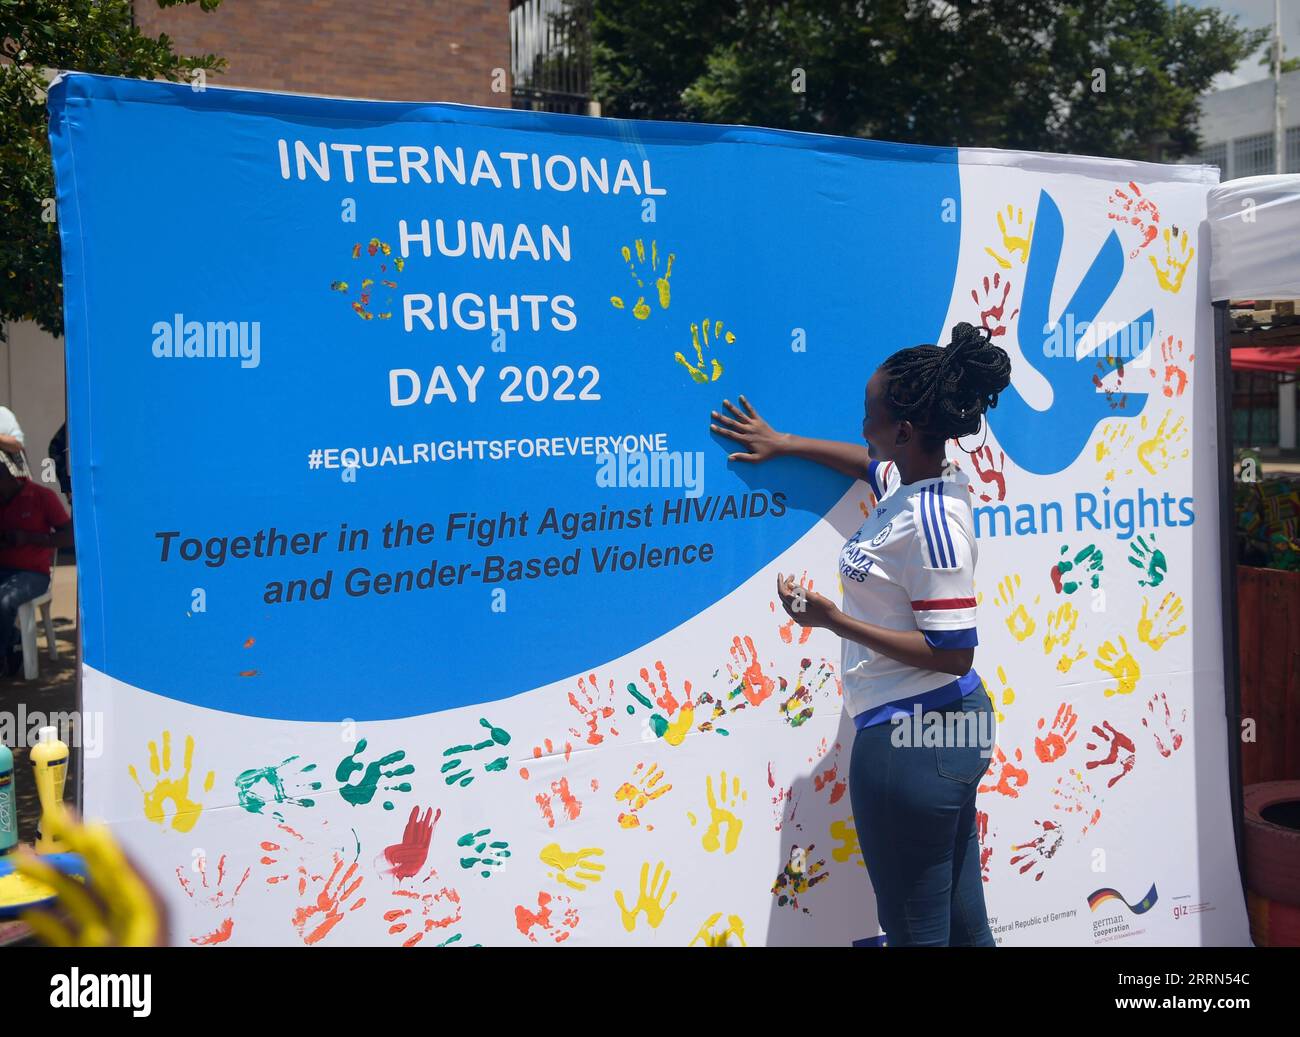 221210 -- GABORONE, 10. Dezember 2022 -- Eine Frau trägt Farbe auf ein Banner während einer öffentlichen Veranstaltung zum Gedenken an den Tag der Menschenrechte in Gaborone, Botswana, am 9. Dezember 2022. Der Tag der Menschenrechte findet jedes Jahr am 10. Dezember statt, dem Tag, an dem die Generalversammlung der Vereinten Nationen 1948 die Allgemeine Erklärung der Menschenrechte verabschiedete. Foto von /Xinhua BOTSWANA-INT L MENSCHENRECHTSTAG-GEDENKEN TshekisoxTebalo PUBLICATIONxNOTxINxCHN Stockfoto